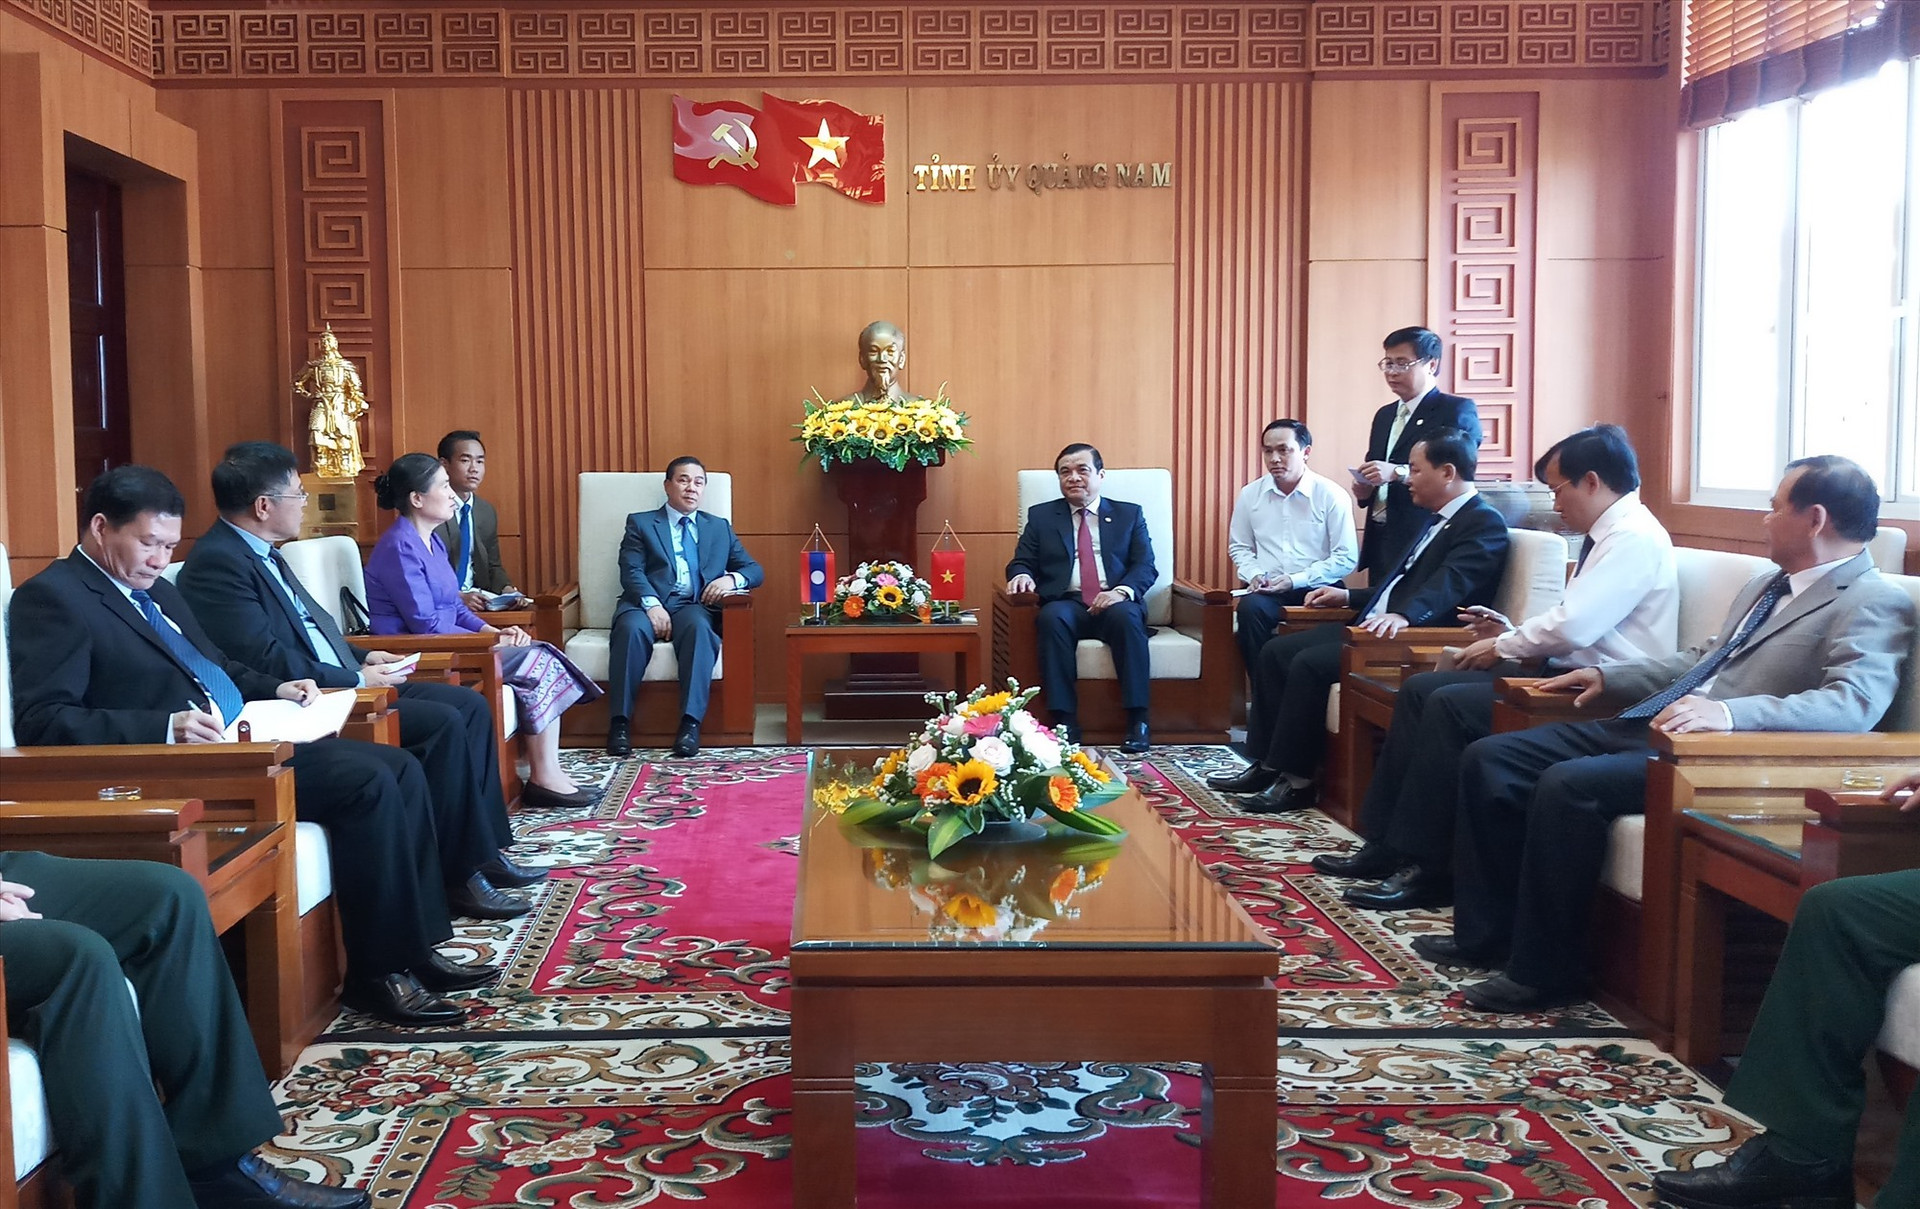 Đoàn côg tác của Đại sứ Quán Lào tại Việt Nam đến thăm, chào xã giao lãnh đạo tỉnh Quảng Nam. Ảnh: A.N